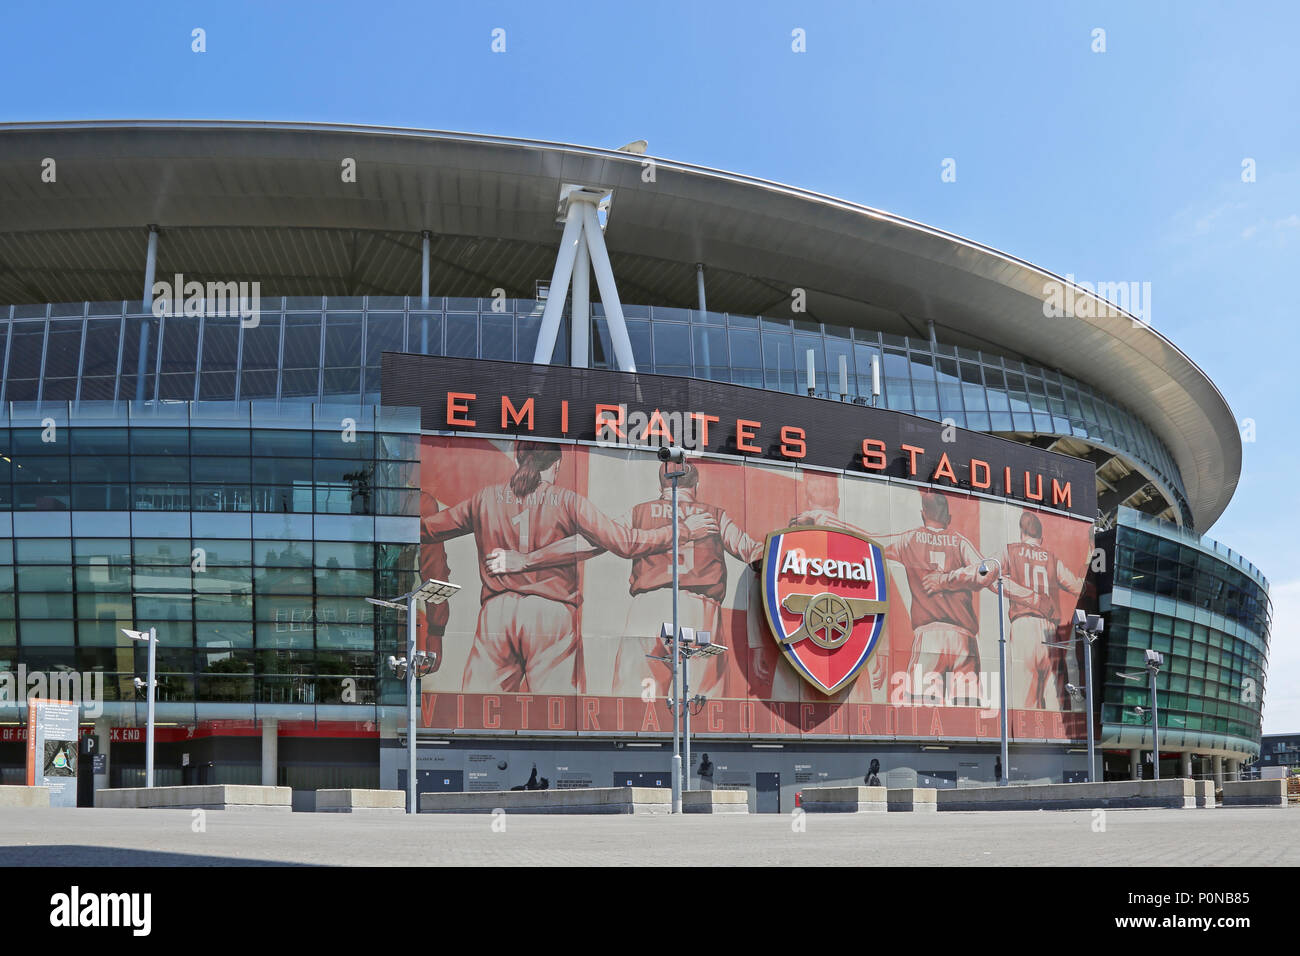 Außenansicht des Londoner Emirates Stadium, das Heimstadion Arsenal Football Club. Stockfoto